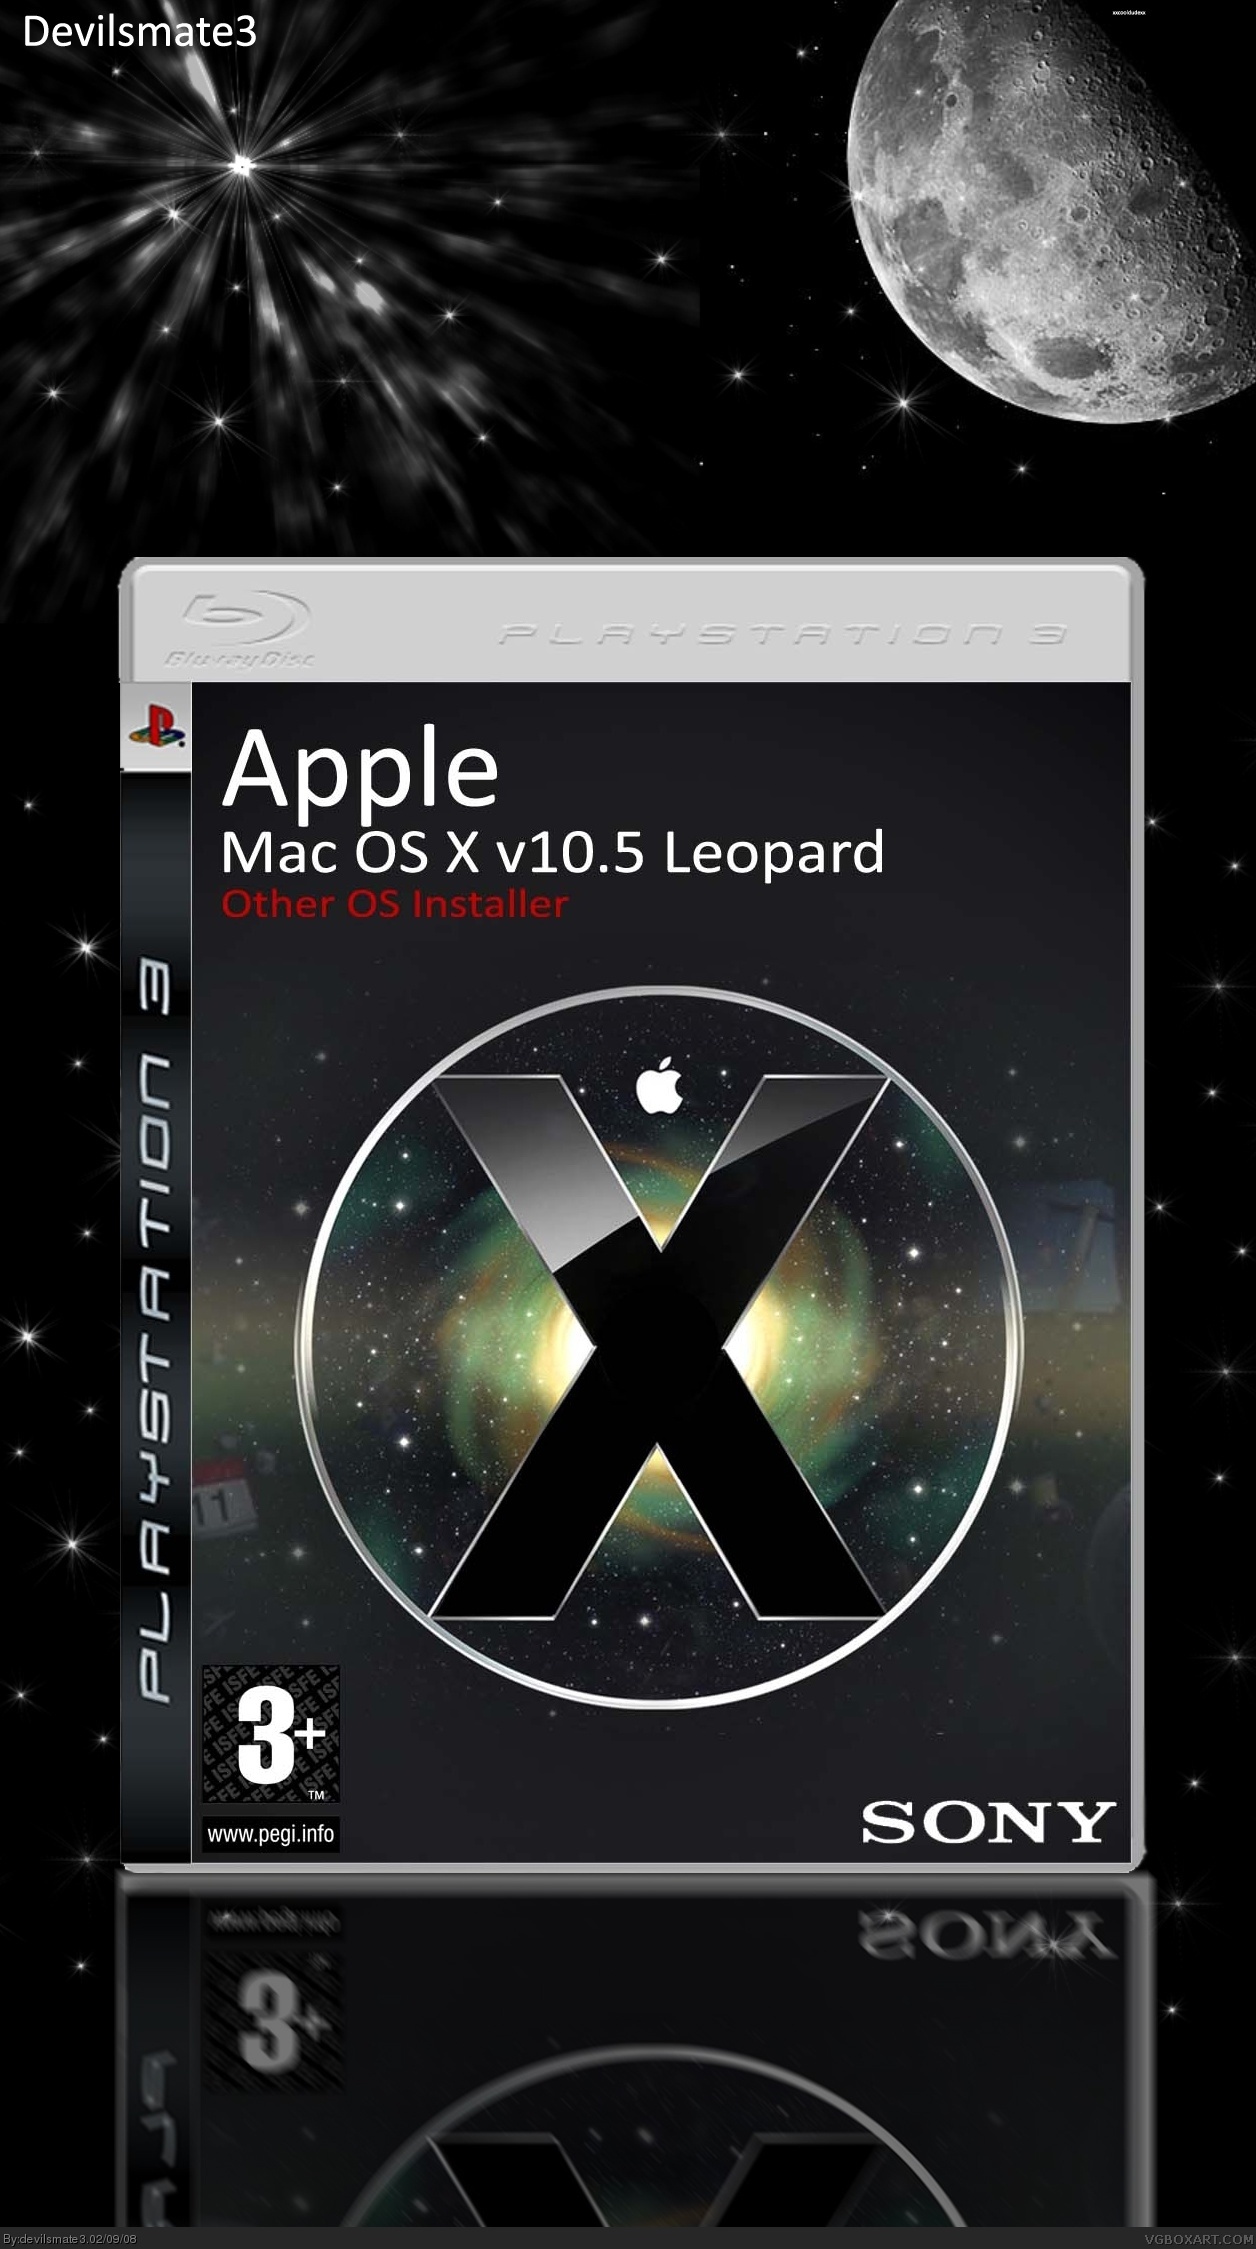 Mac OS X v10.5 Leopard box cover